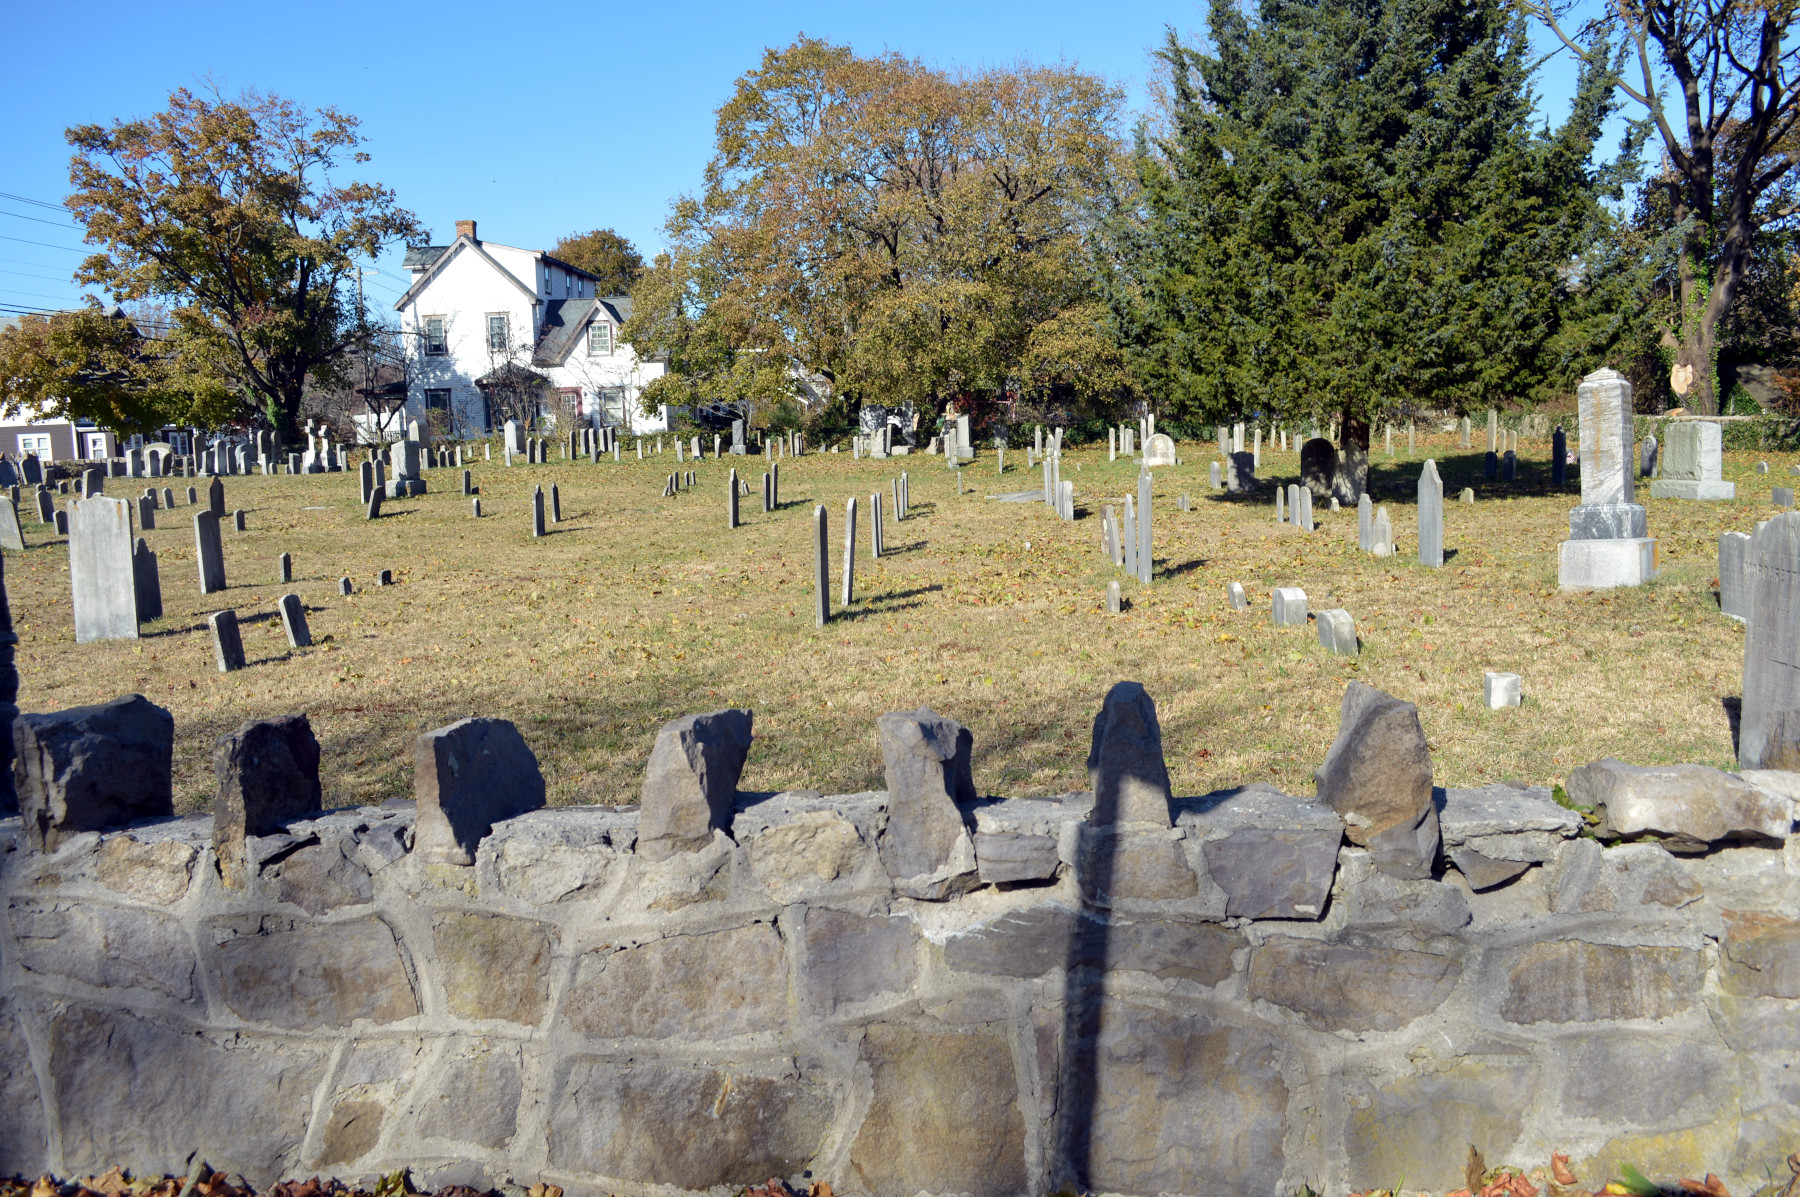 [Methodist Cemetery 2019 Image]